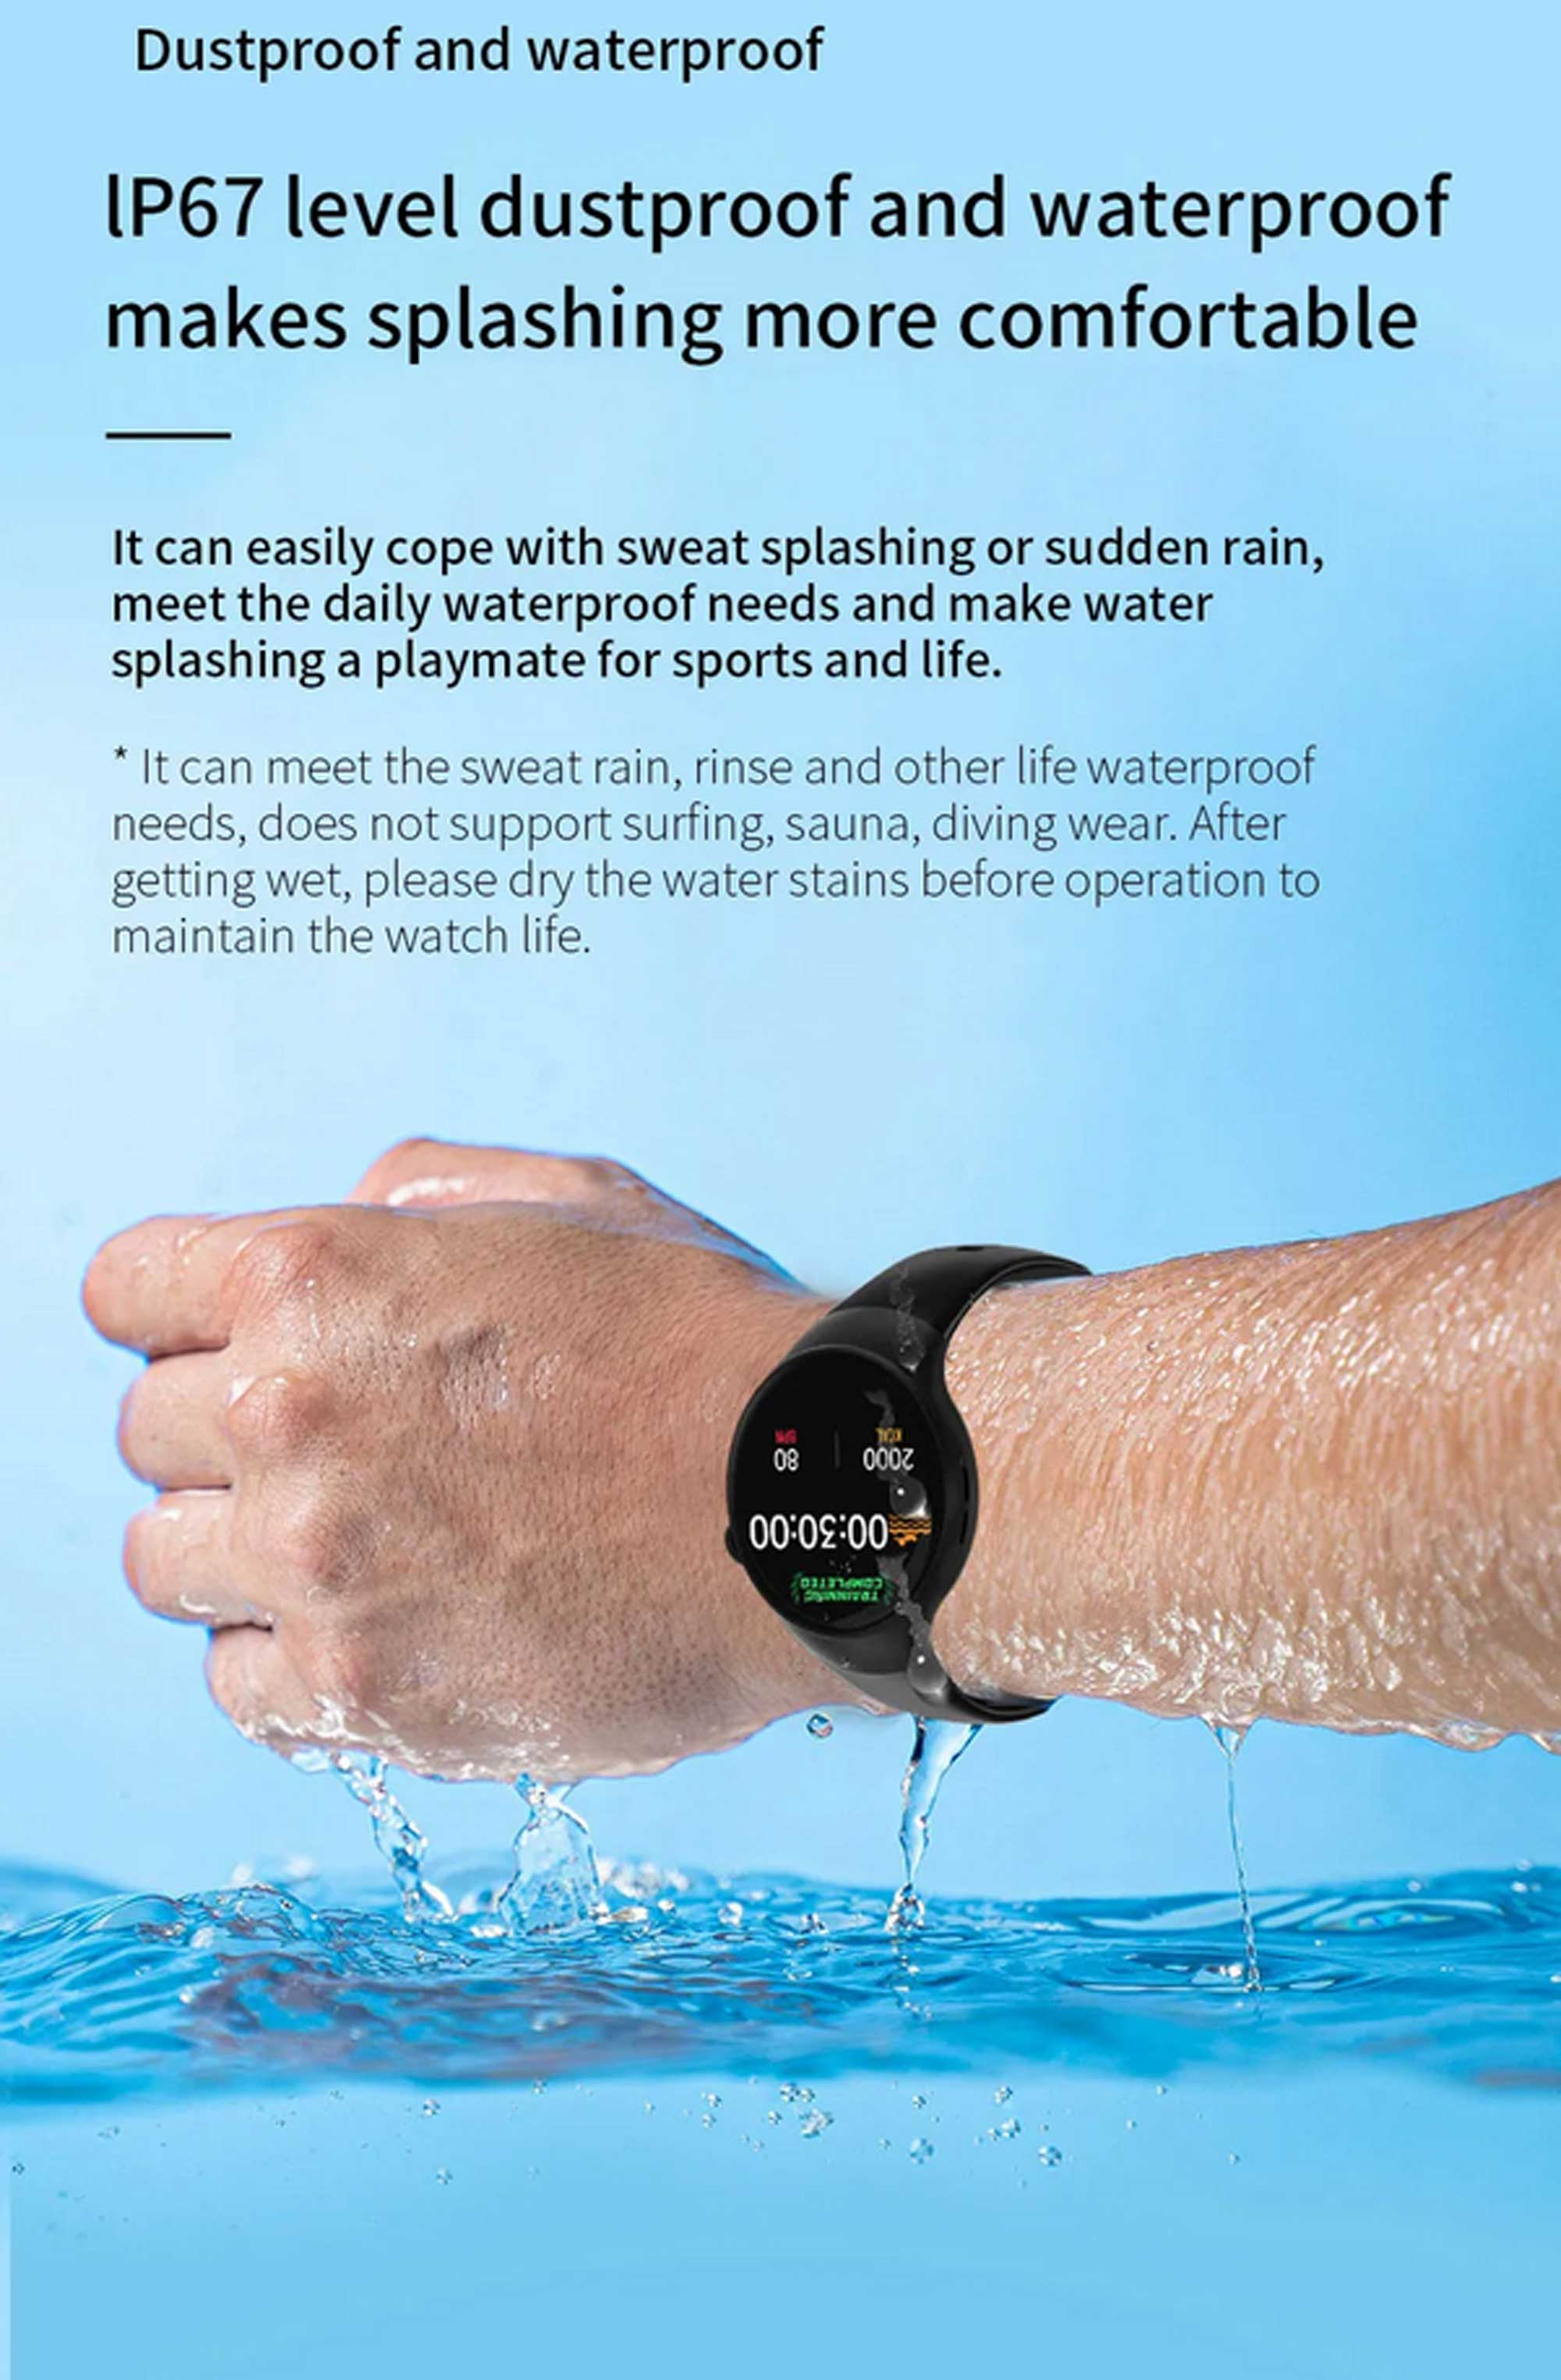 LOOKIT SM4 Gesundheitsfunktionen, Multisport, Schwarz SW Telefonie Smart Watch Bluetooth Fitnessuhr 8 Benachrichtigungen, TPU